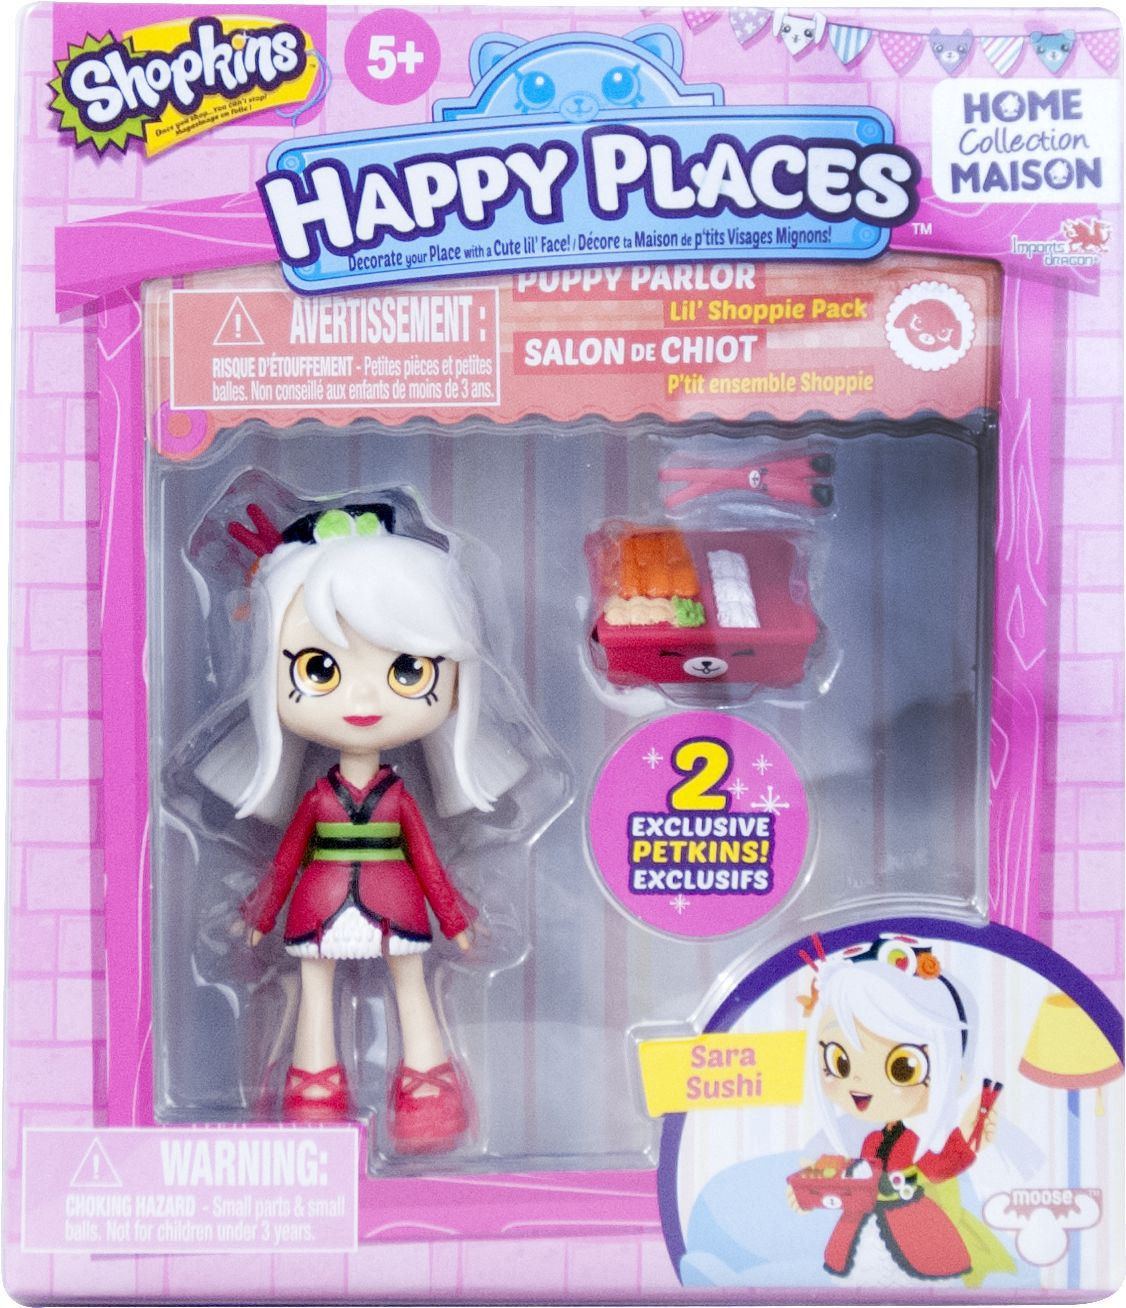 Happy Places Sara Sushi Shopkins 1 Puppe mit Zubehör